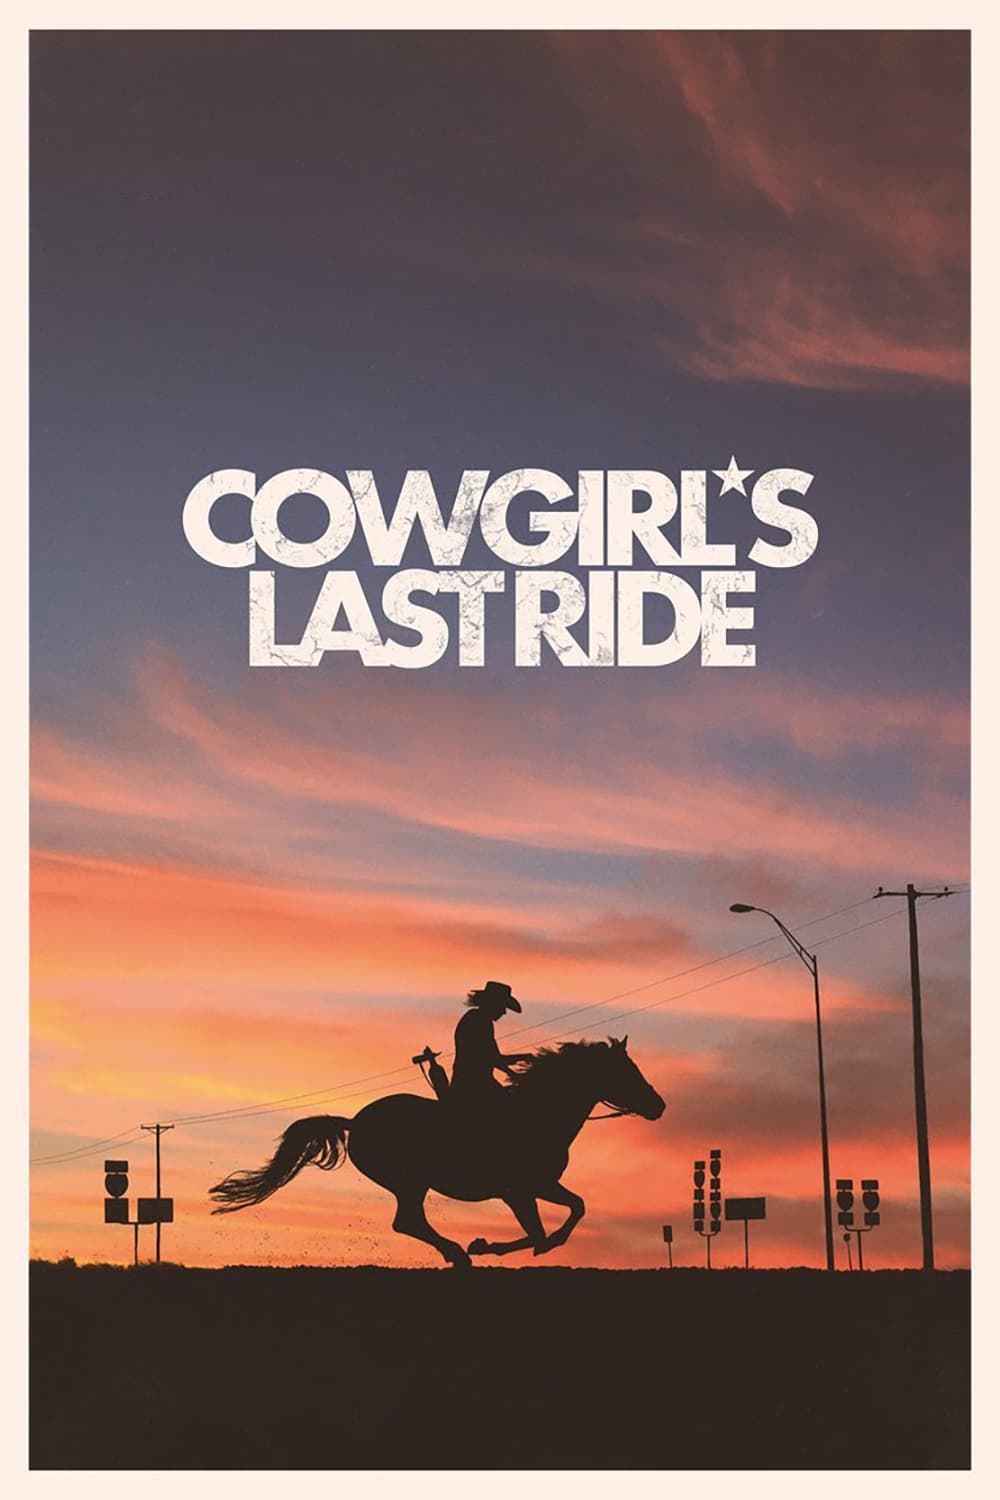 Cowgirl's Last Ride